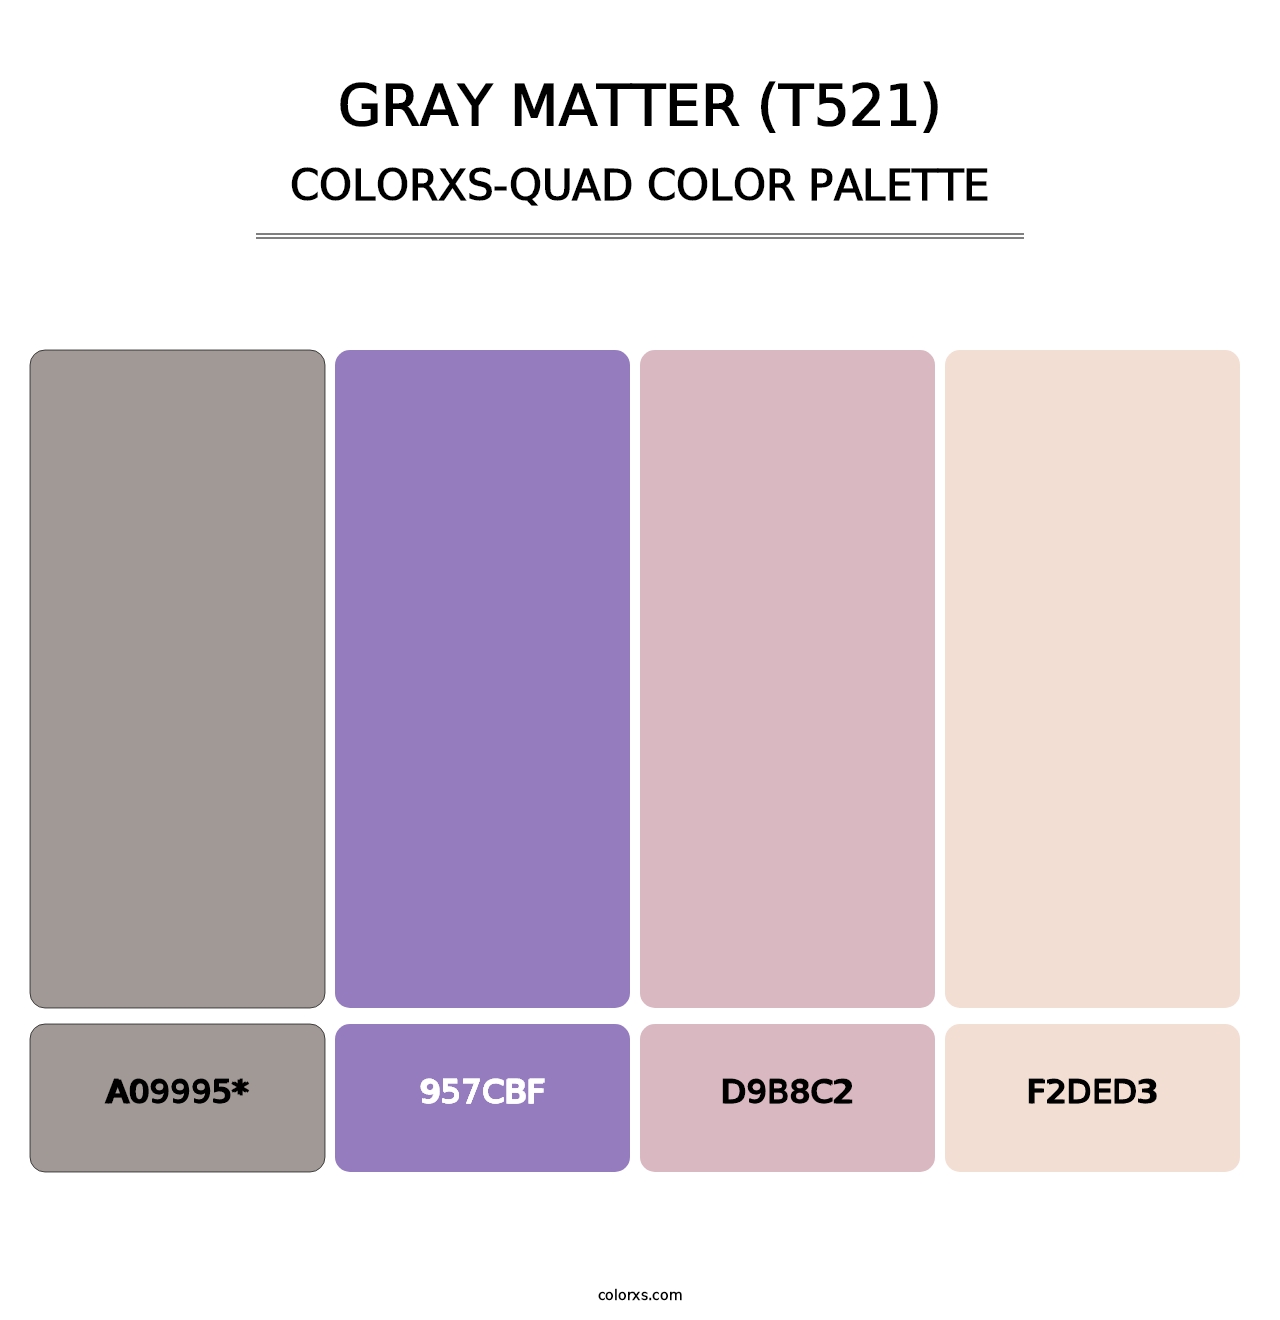 Gray Matter (T521) - Colorxs Quad Palette